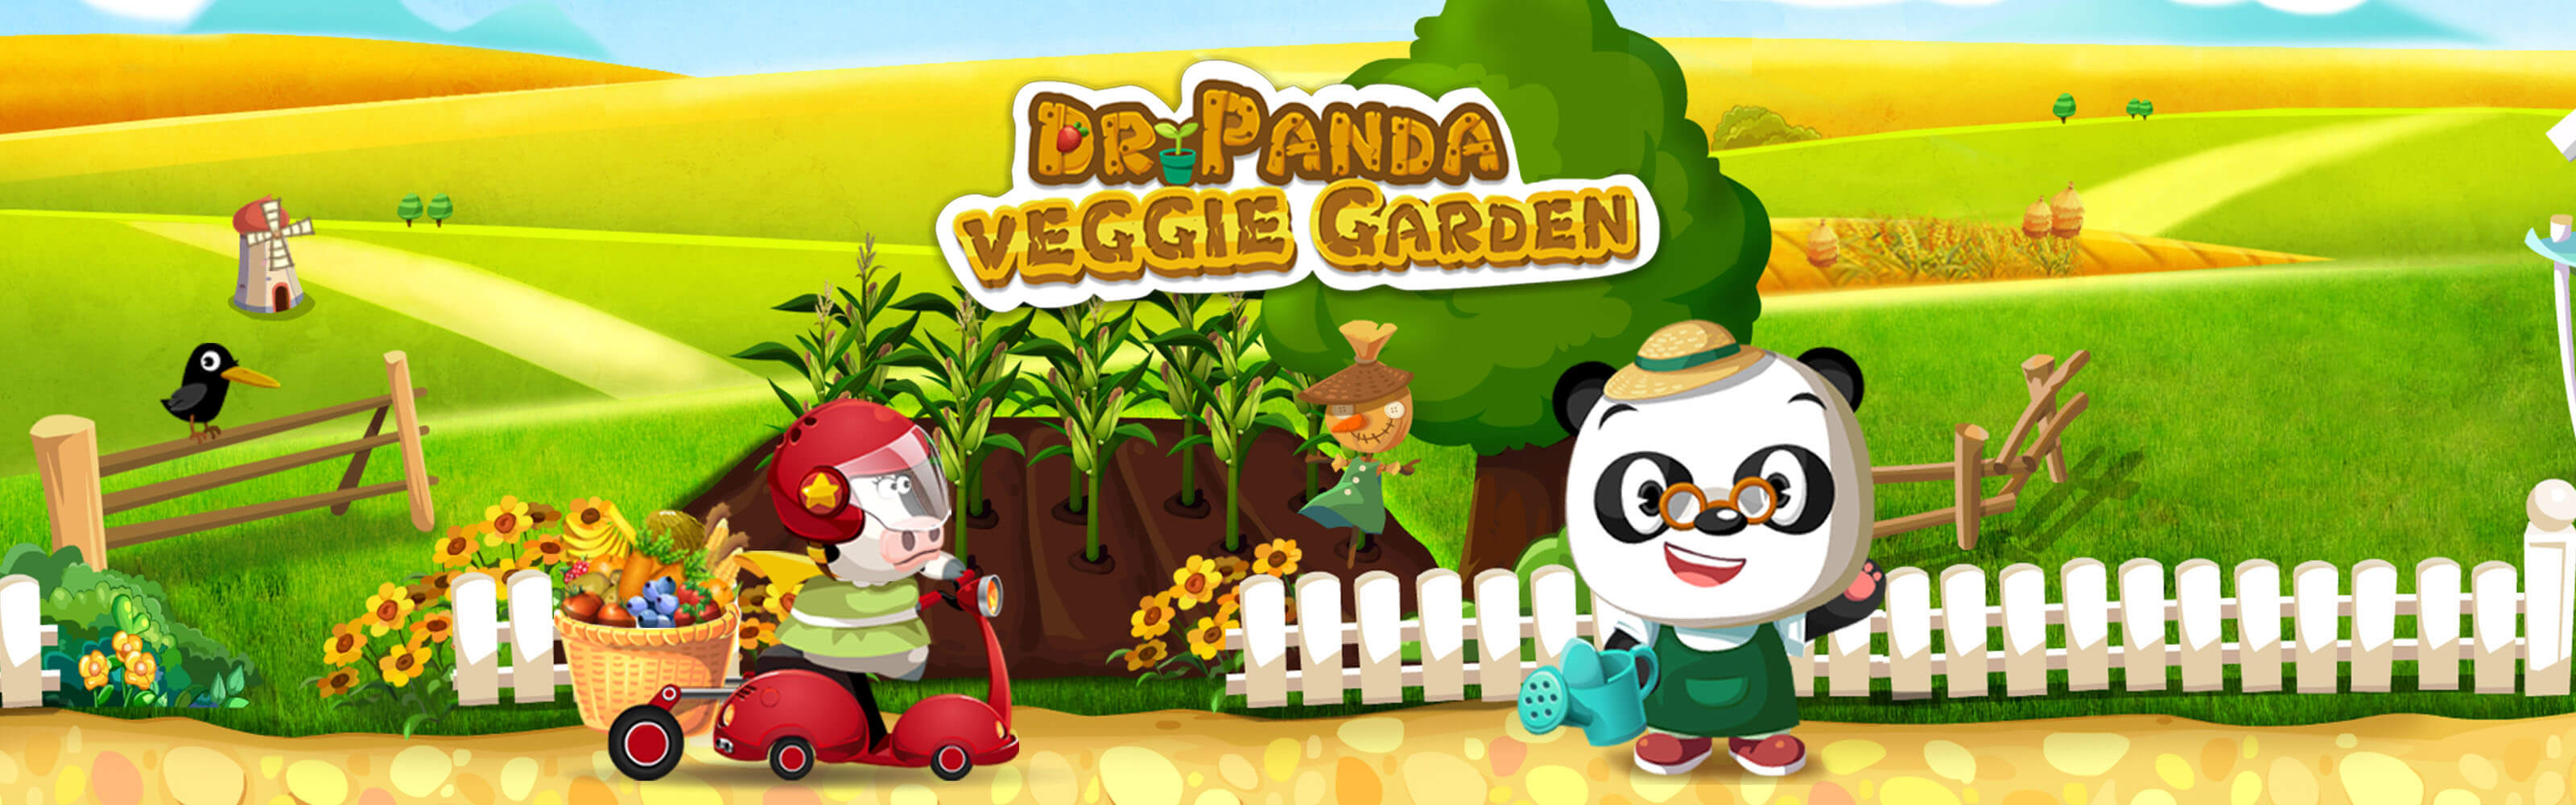 Dr Panda Veggie Garden